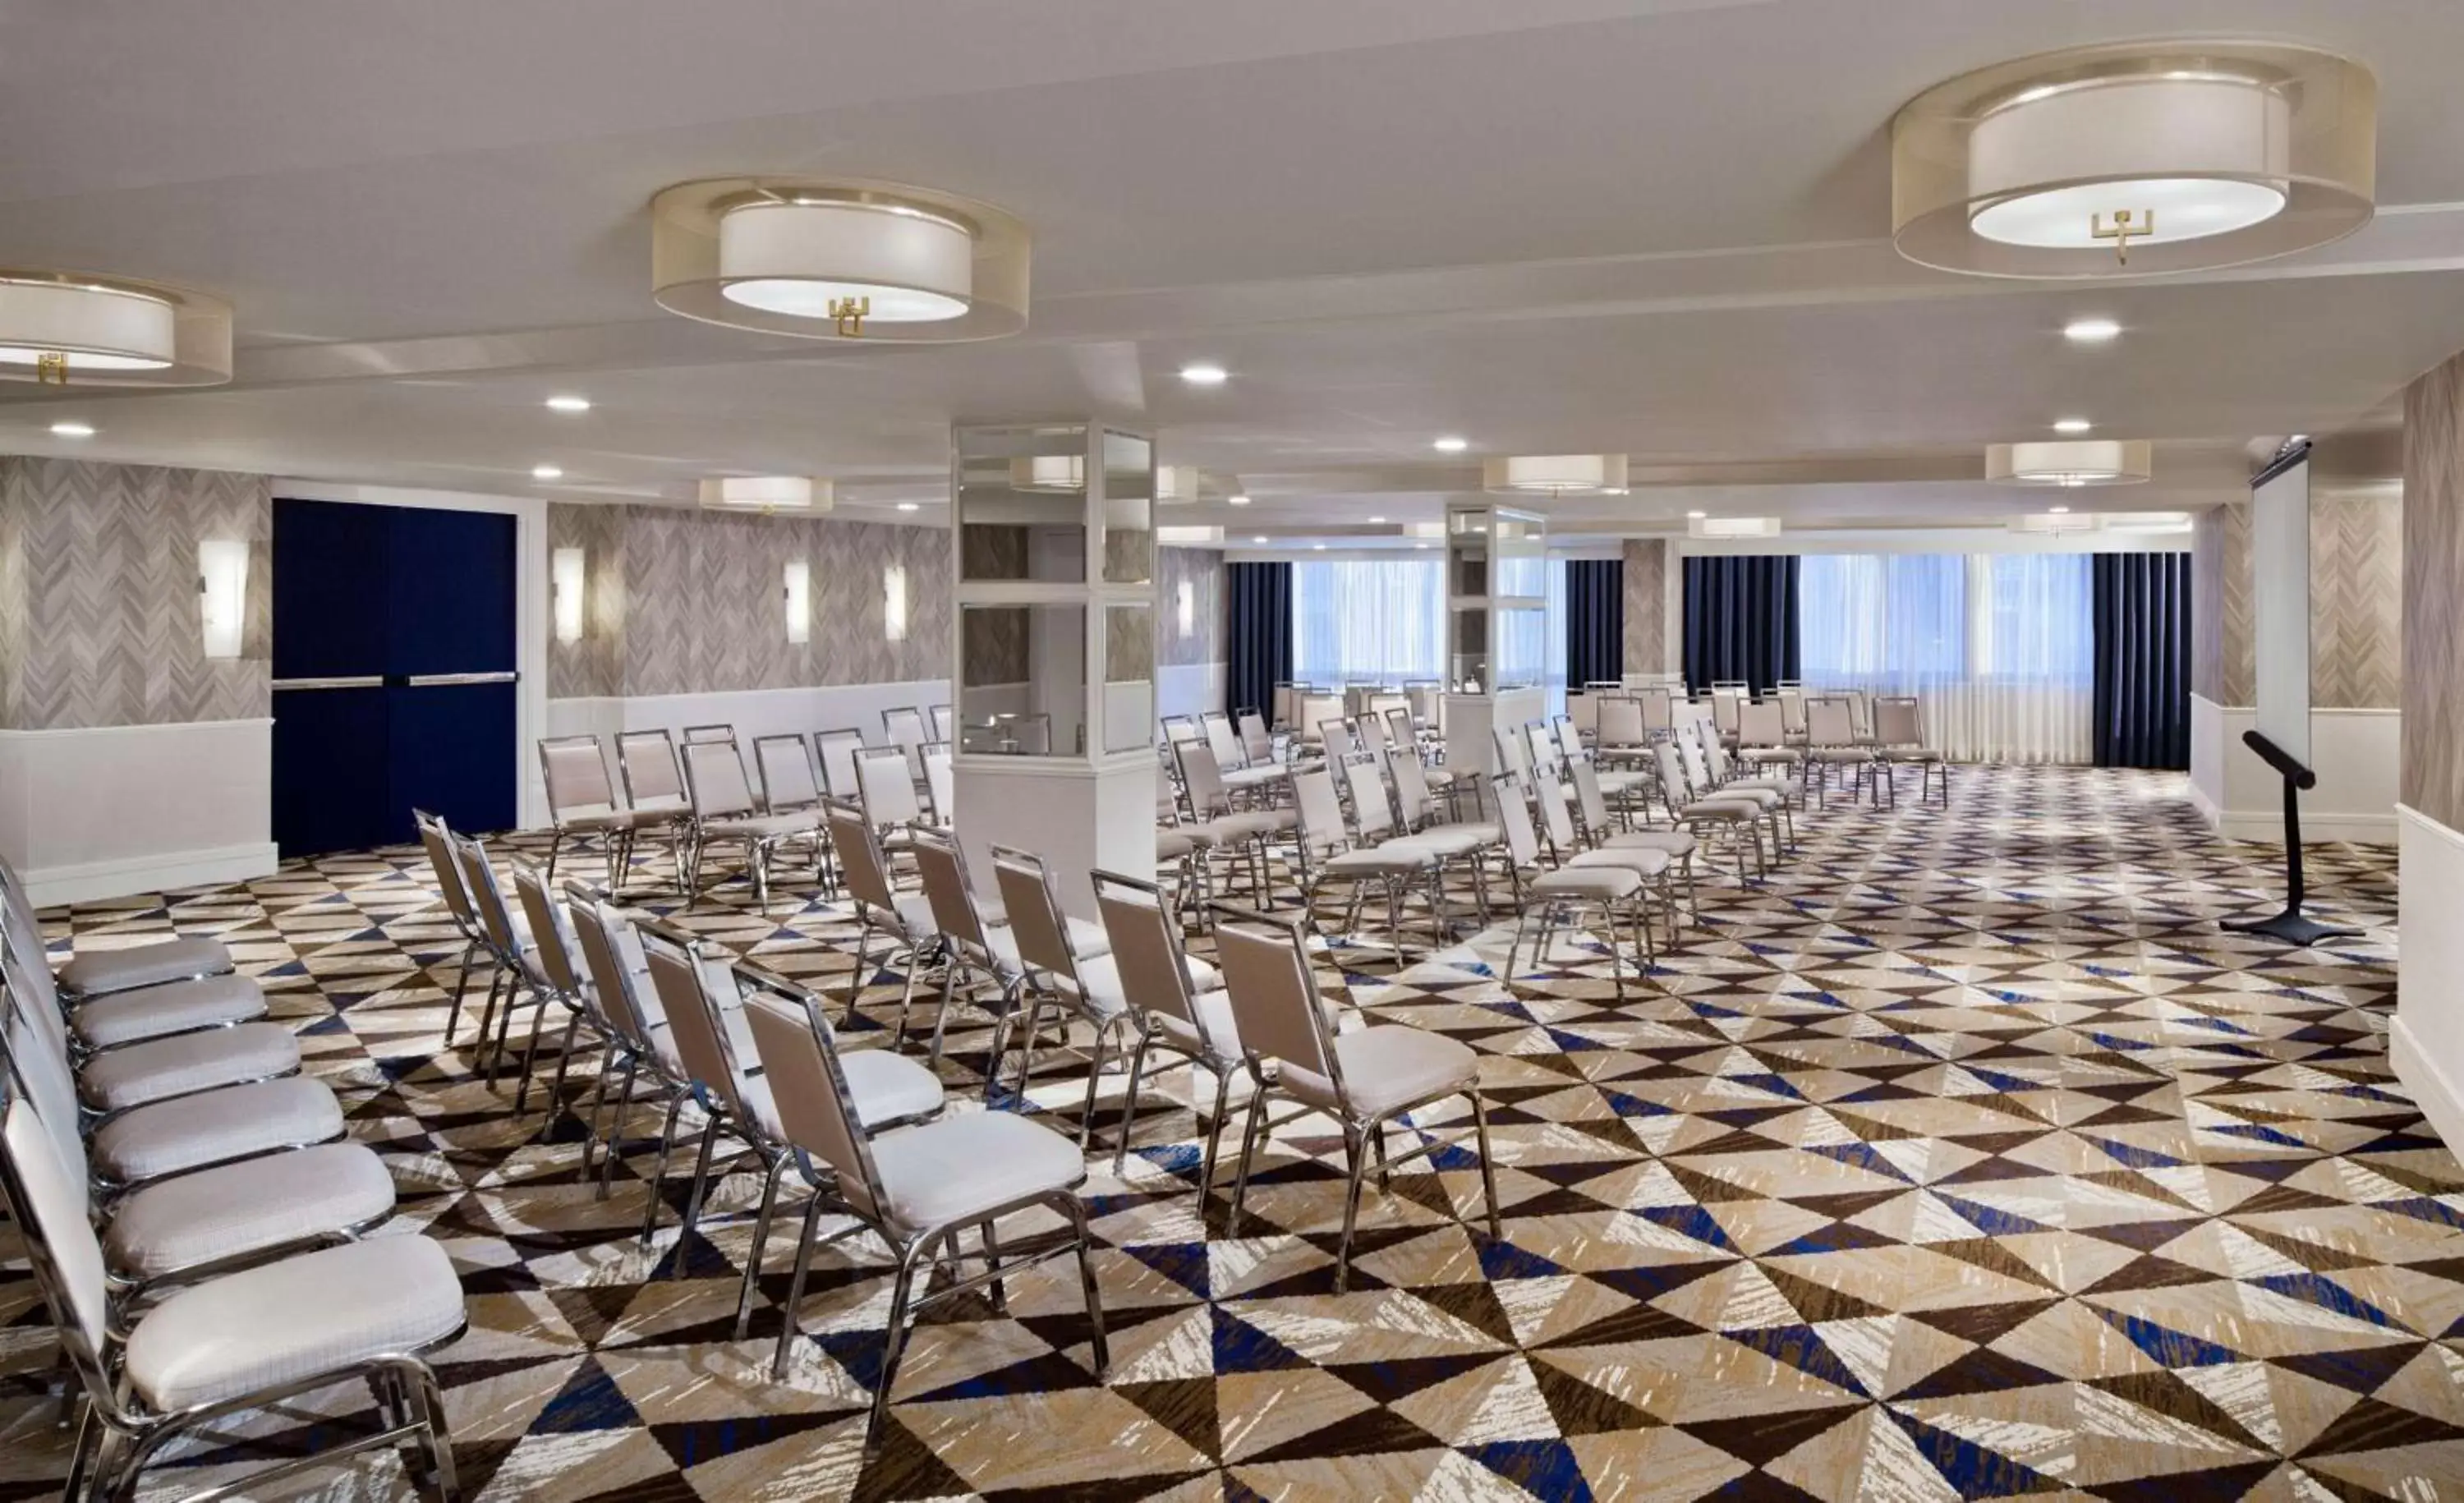 Meeting/conference room, Banquet Facilities in The Royal Sonesta Washington DC Dupont Circle